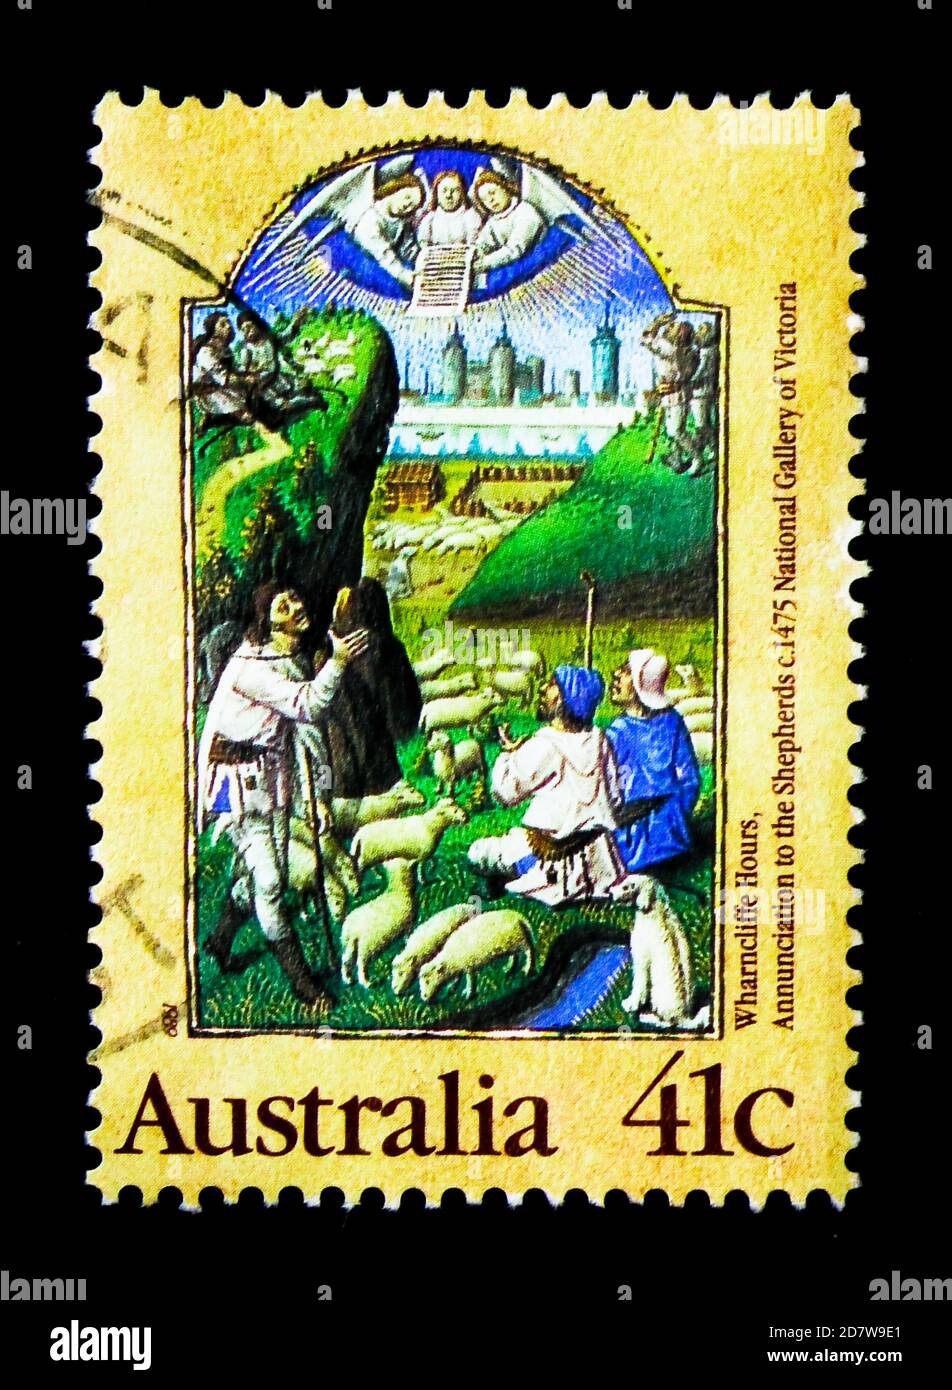 MOSKAU, RUSSLAND - 28. MÄRZ 2018: Eine in Australien gedruckte Briefmarke zeigt Shepherds - Christmas, Serie, um 1989 Stockfoto